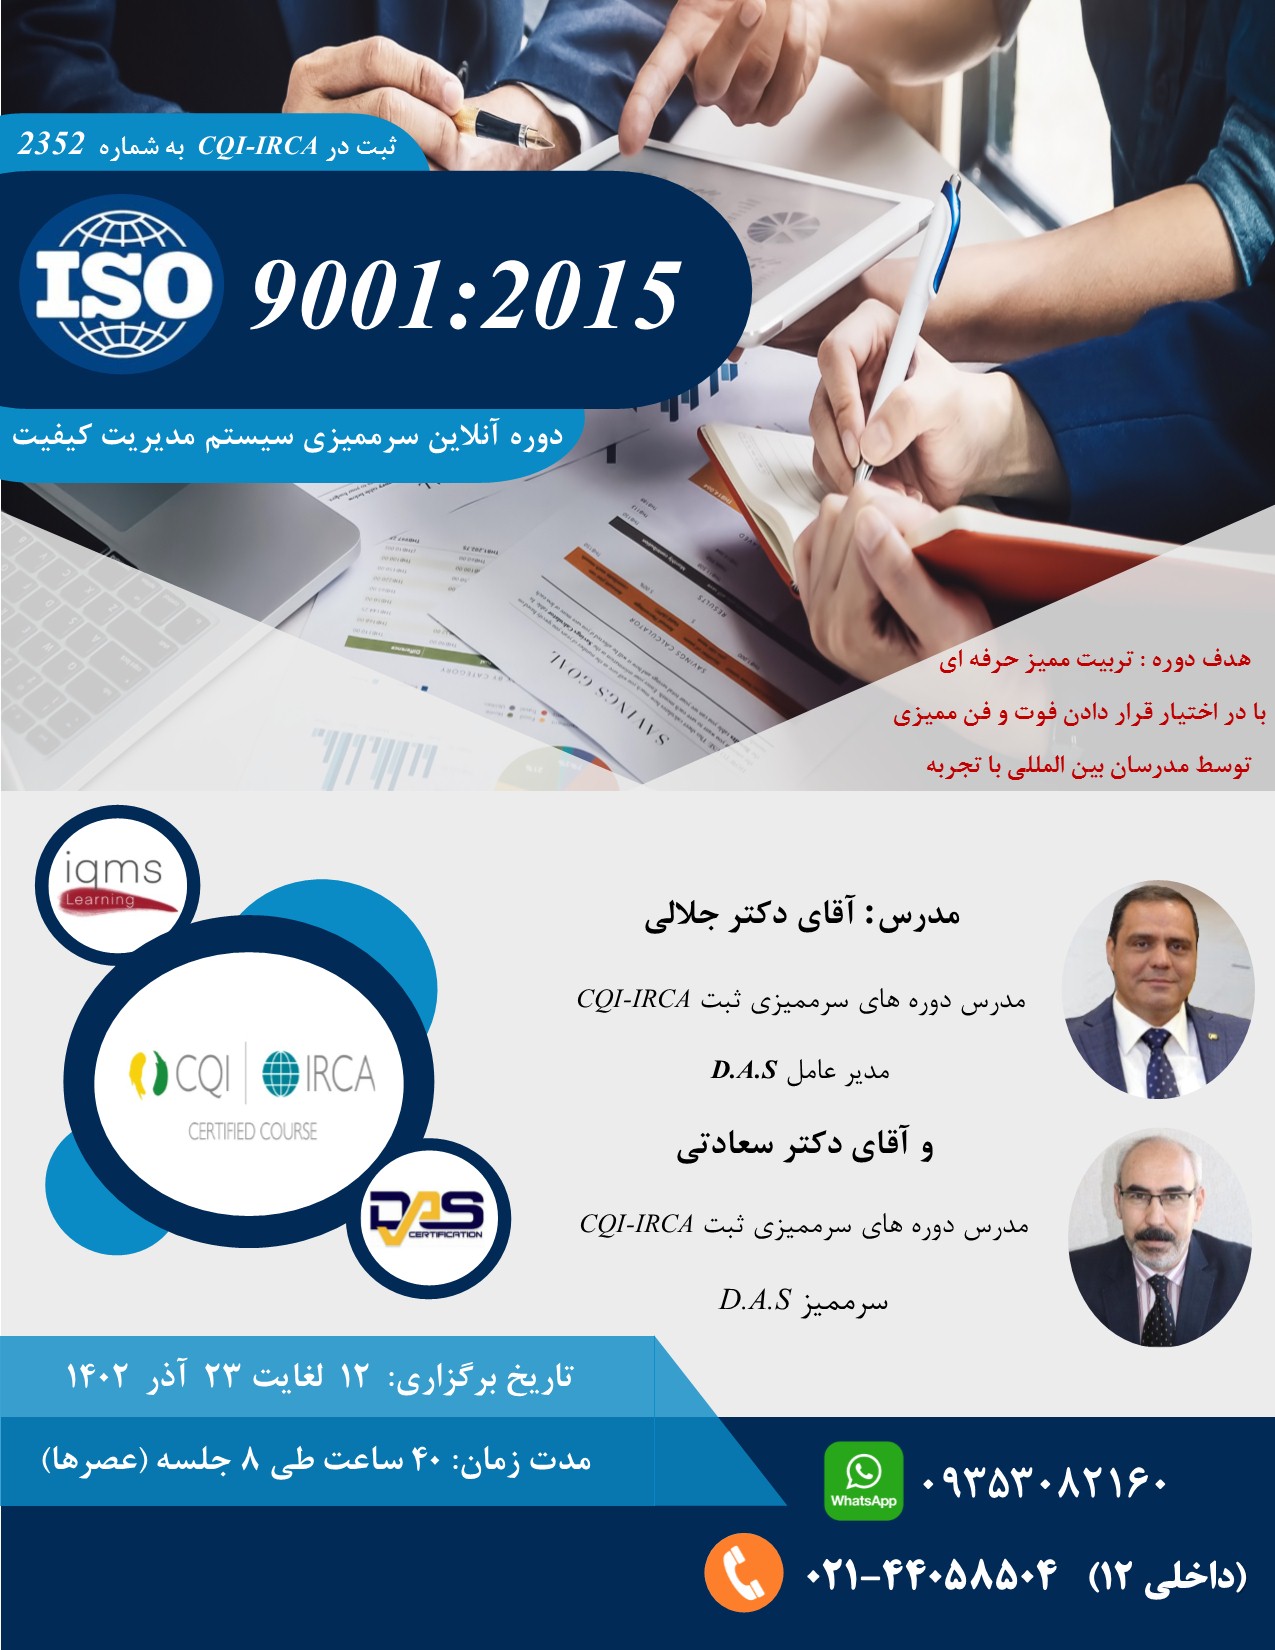 دوره آنلاین سرممیزی ISO 9001:2015